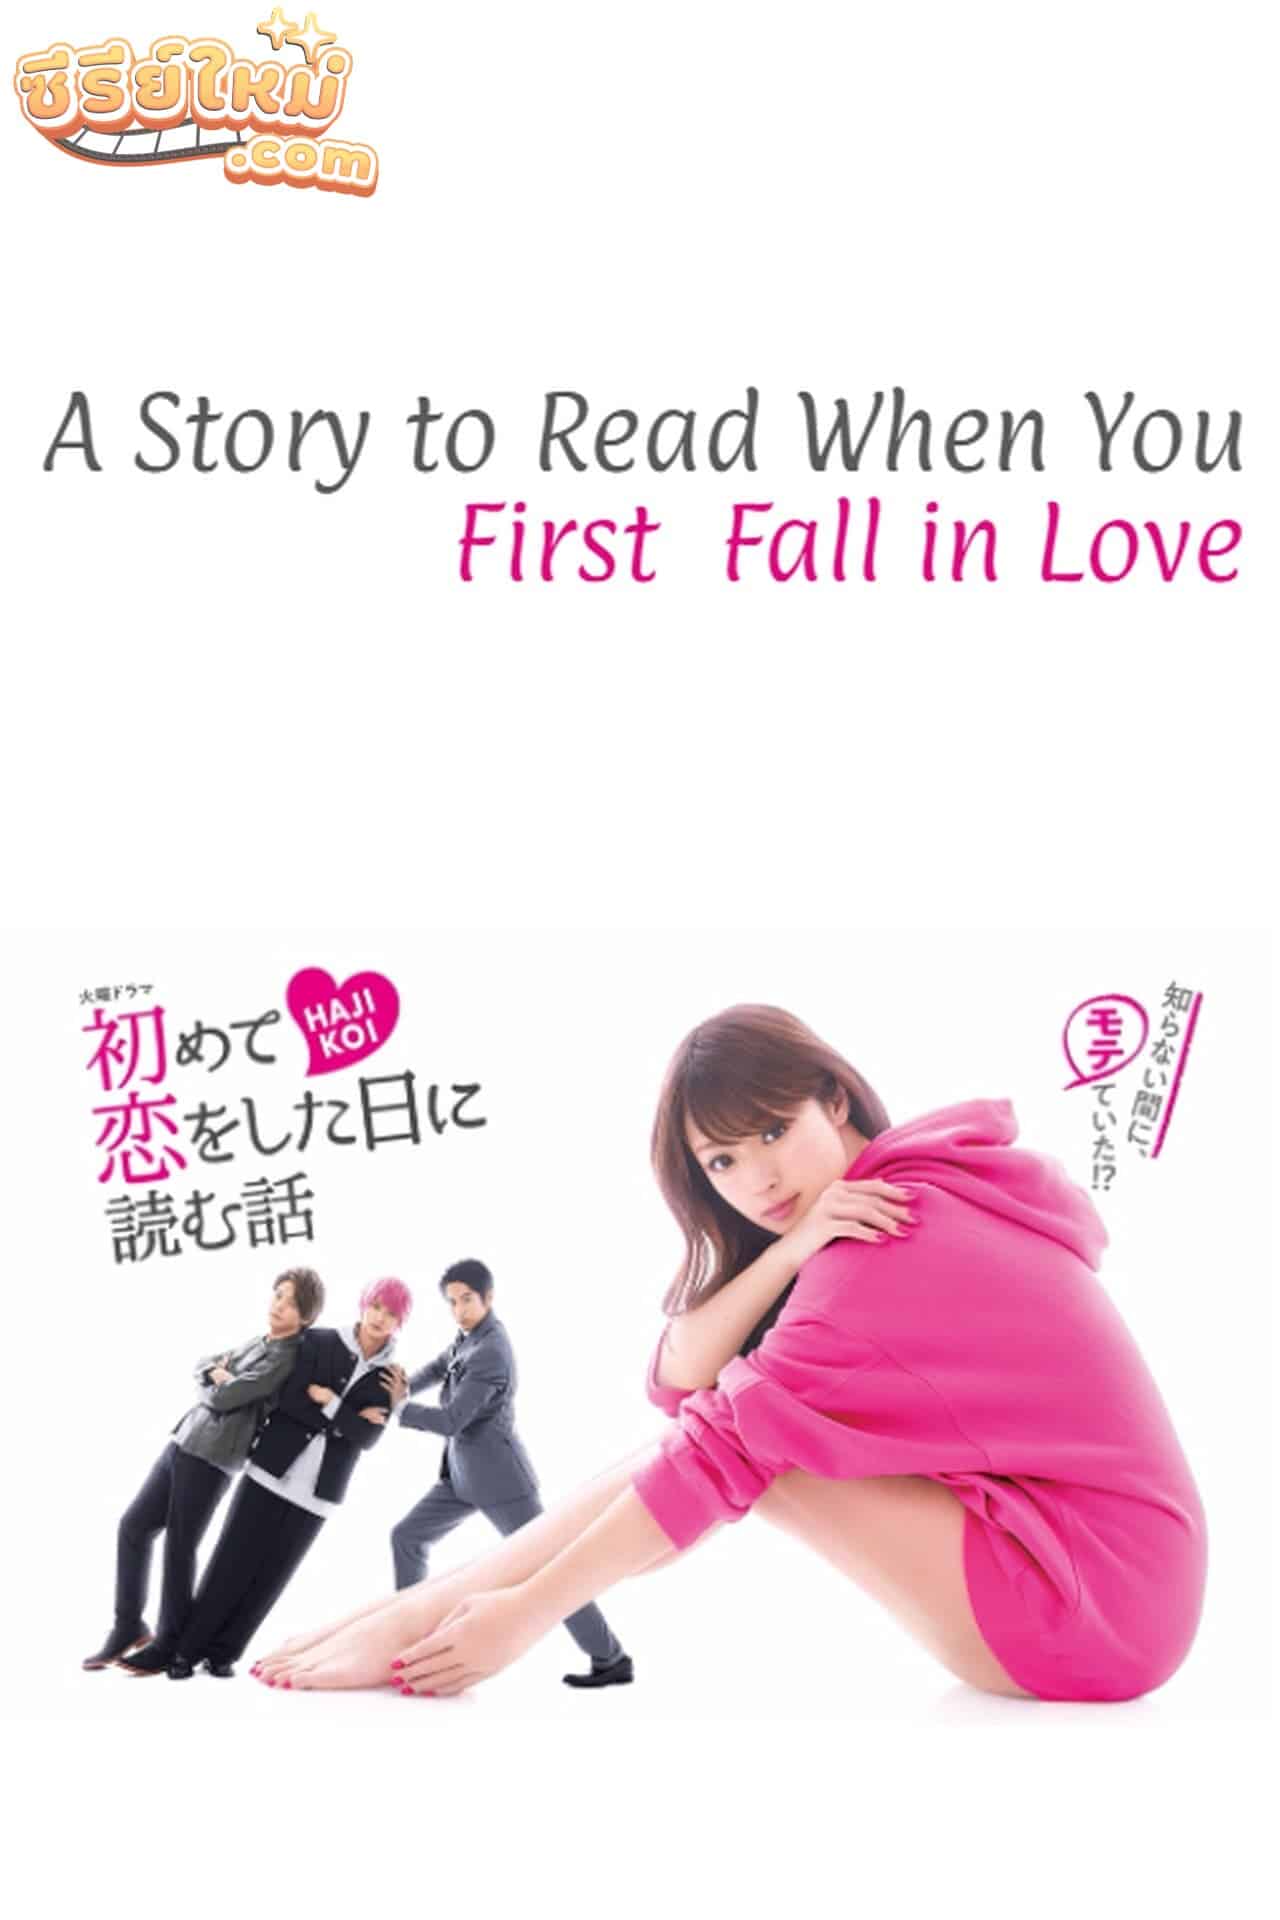 Hajimete Koi wo Shita Hi ni Yomu Hanashi อ่านหัวใจให้ตกหลุมรัก (2019)